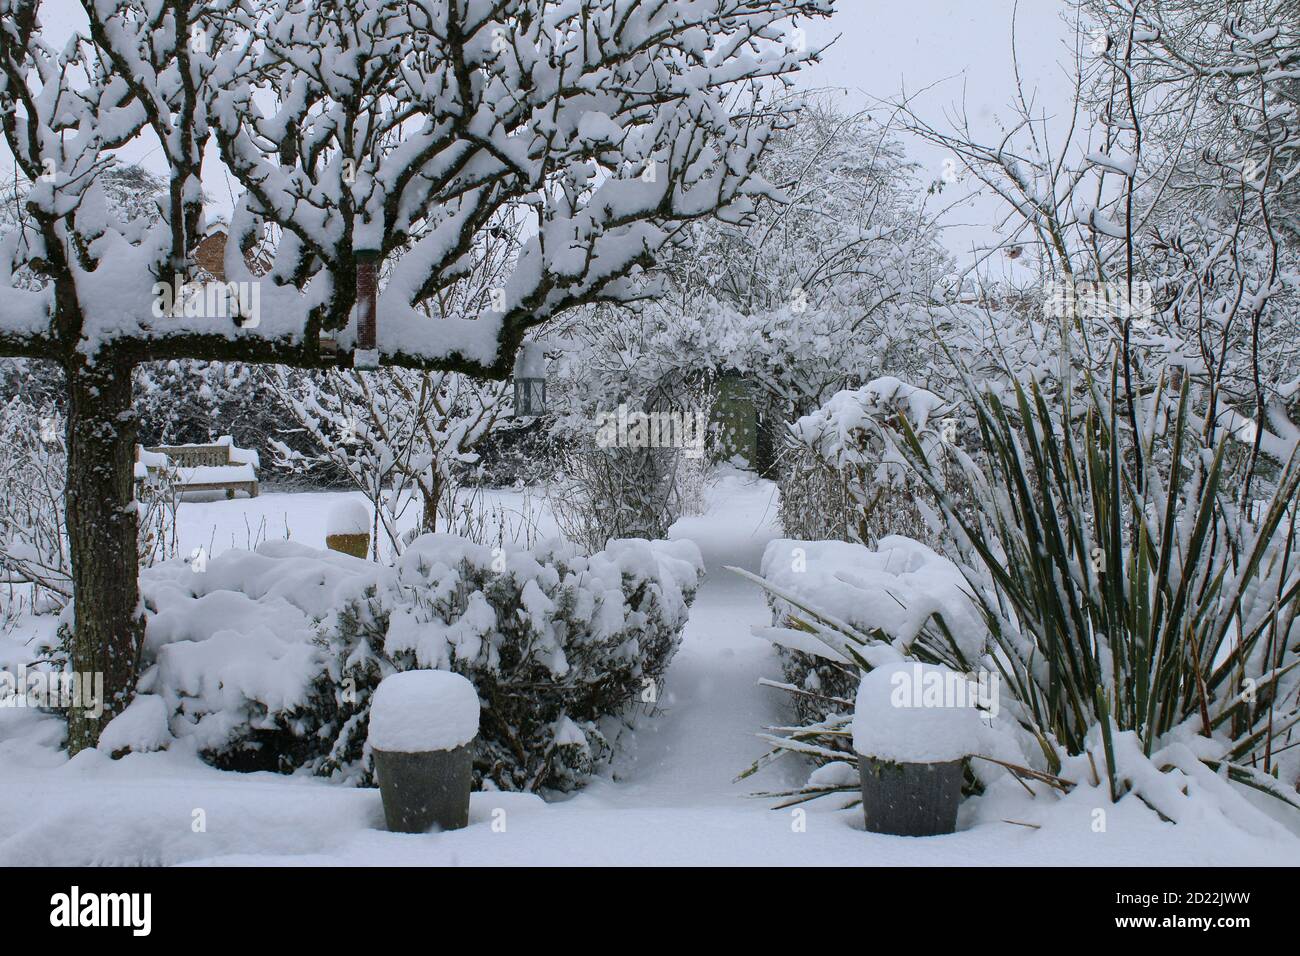 Eine schöne Landschaft Winter Schnee Szene von einem englischen Bio Landgarten gefrorenen eisigen Wetter weiße Schicht Abdeckung auf Birne Espalier Baumweg Rasen stieg Stockfoto